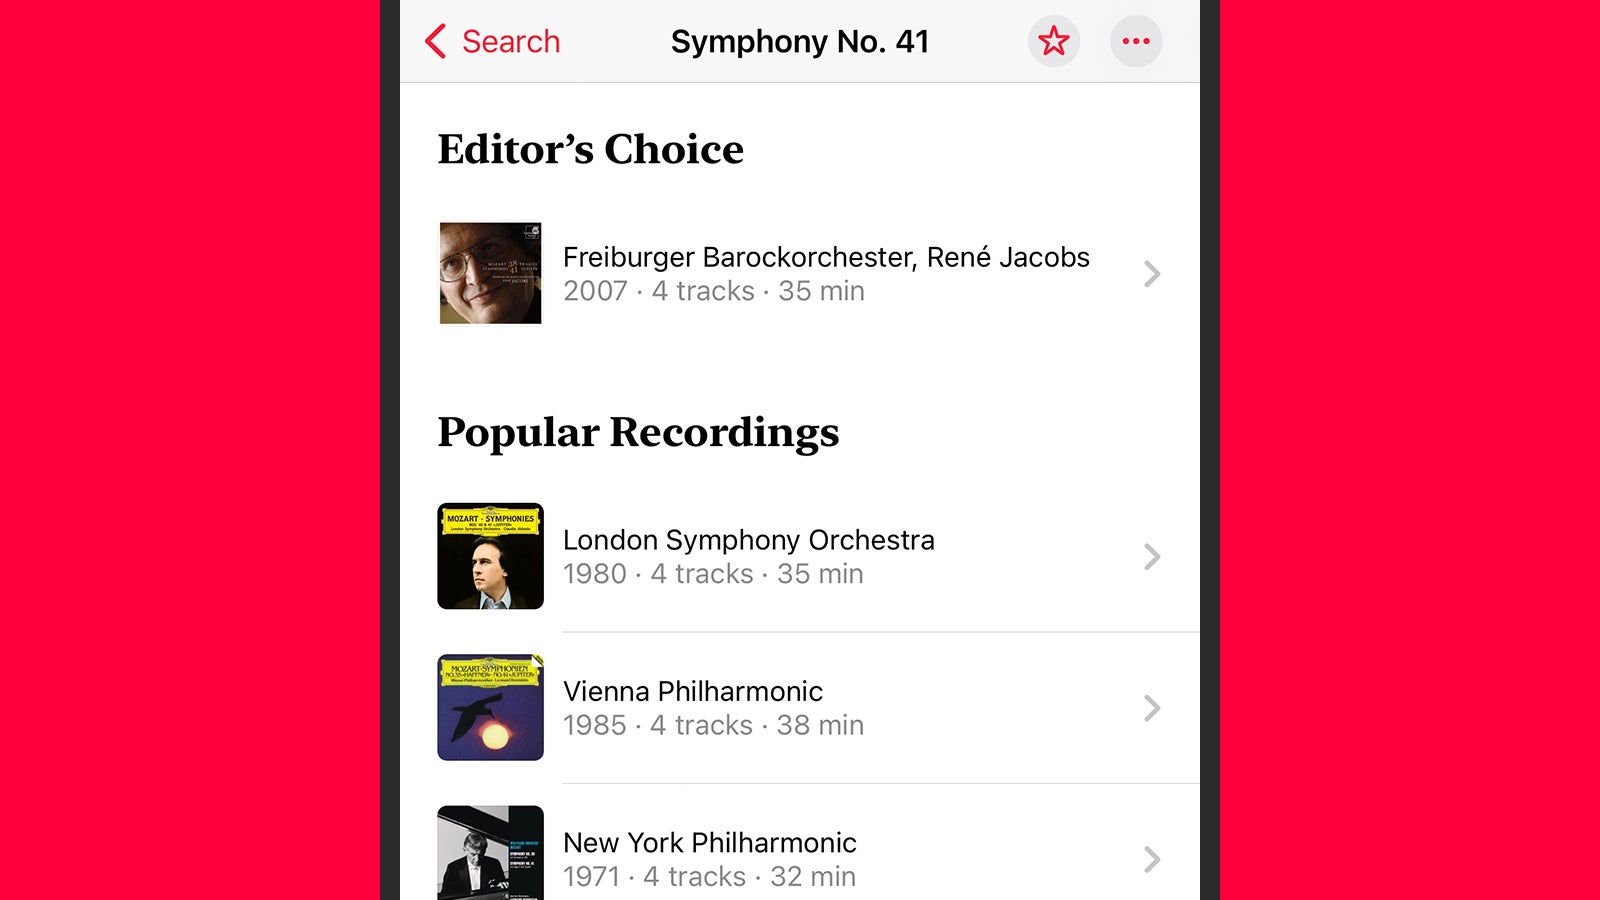 لقطة شاشة من اختيار محرر موسيقى Apple Music الكلاسيكي